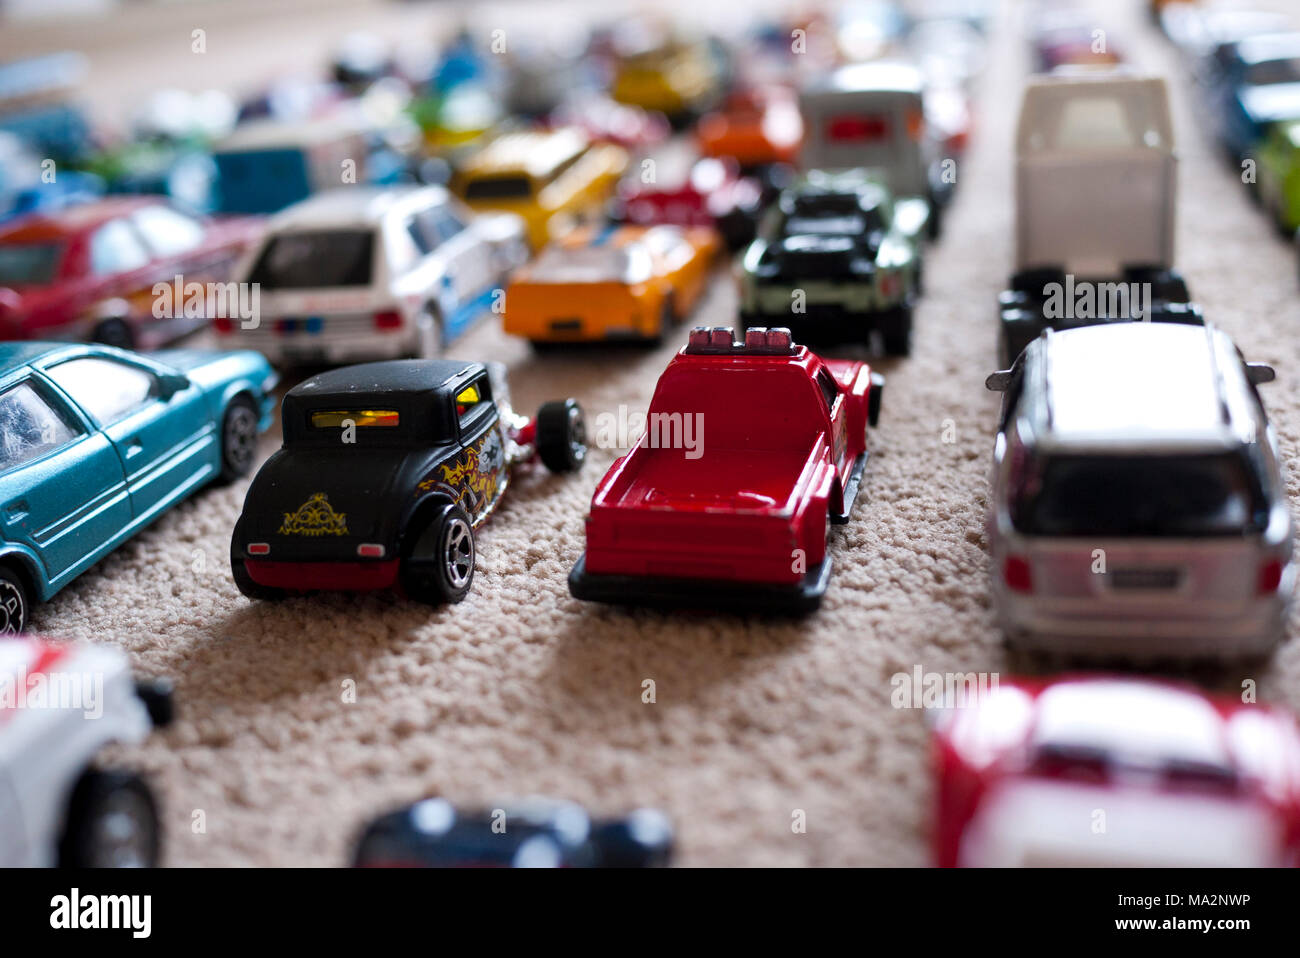 Spielzeugautos aufgereiht auf Teppichboden, England, UK. Stockfoto